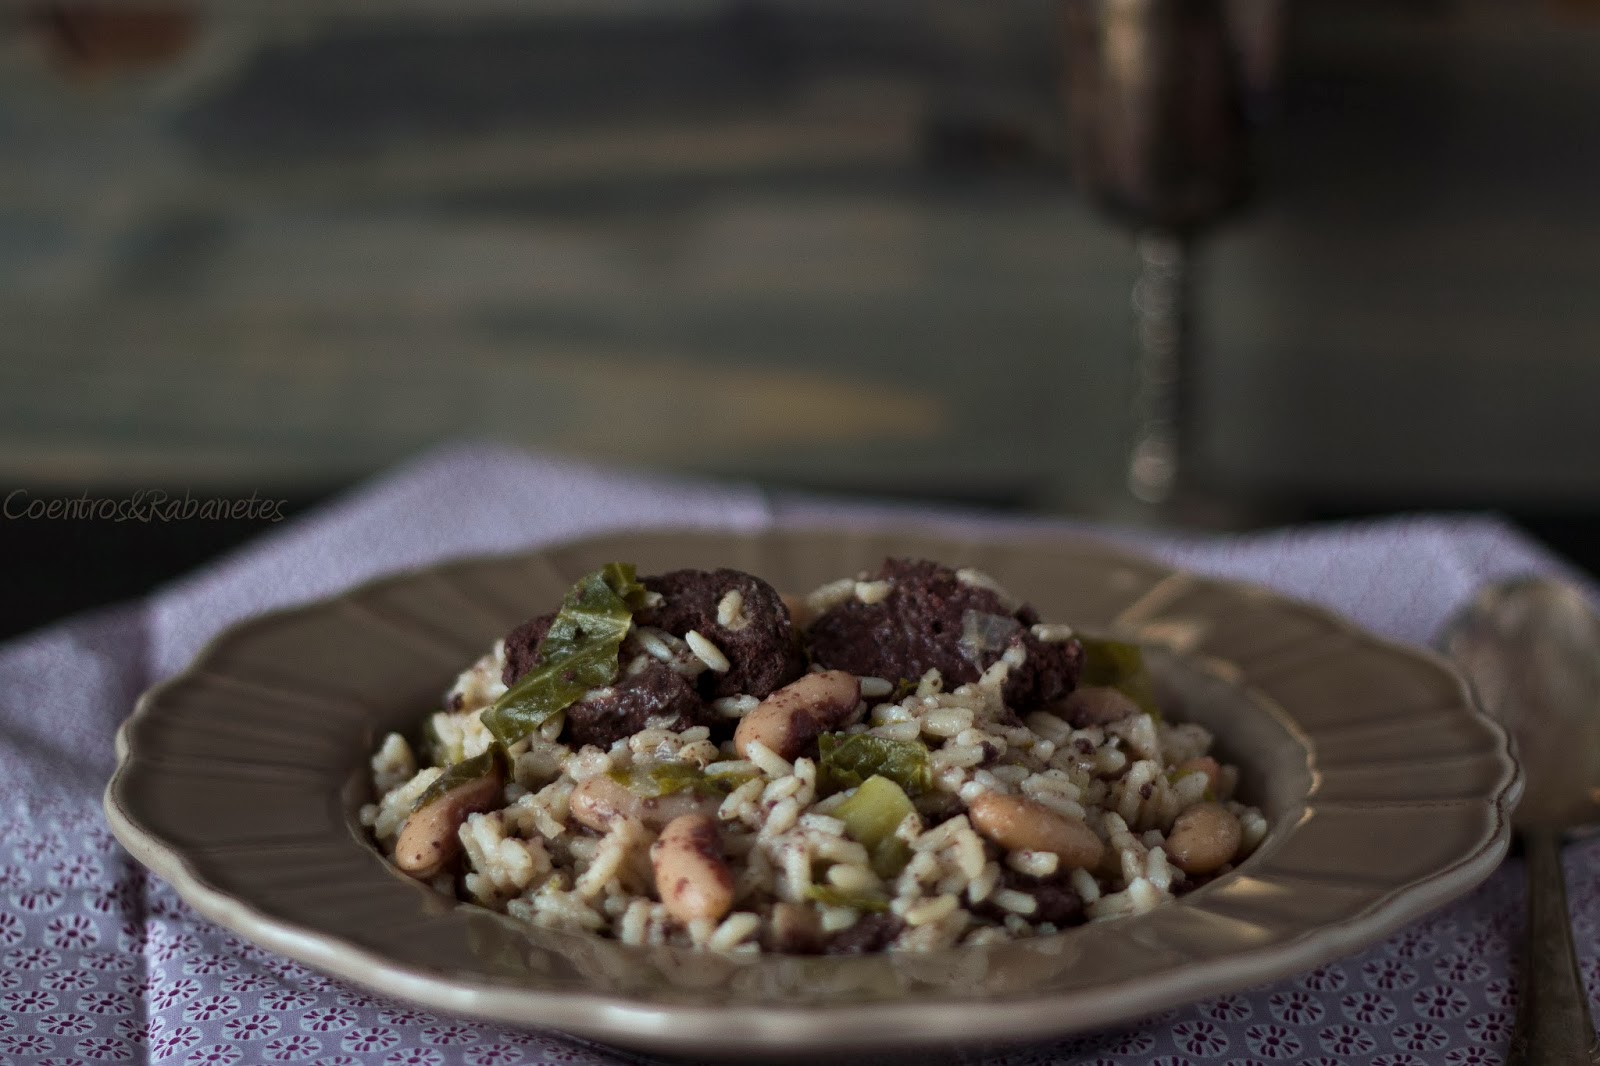 Arroz de feijão, couve e morcela | Bean, cabbage and black sausage rice